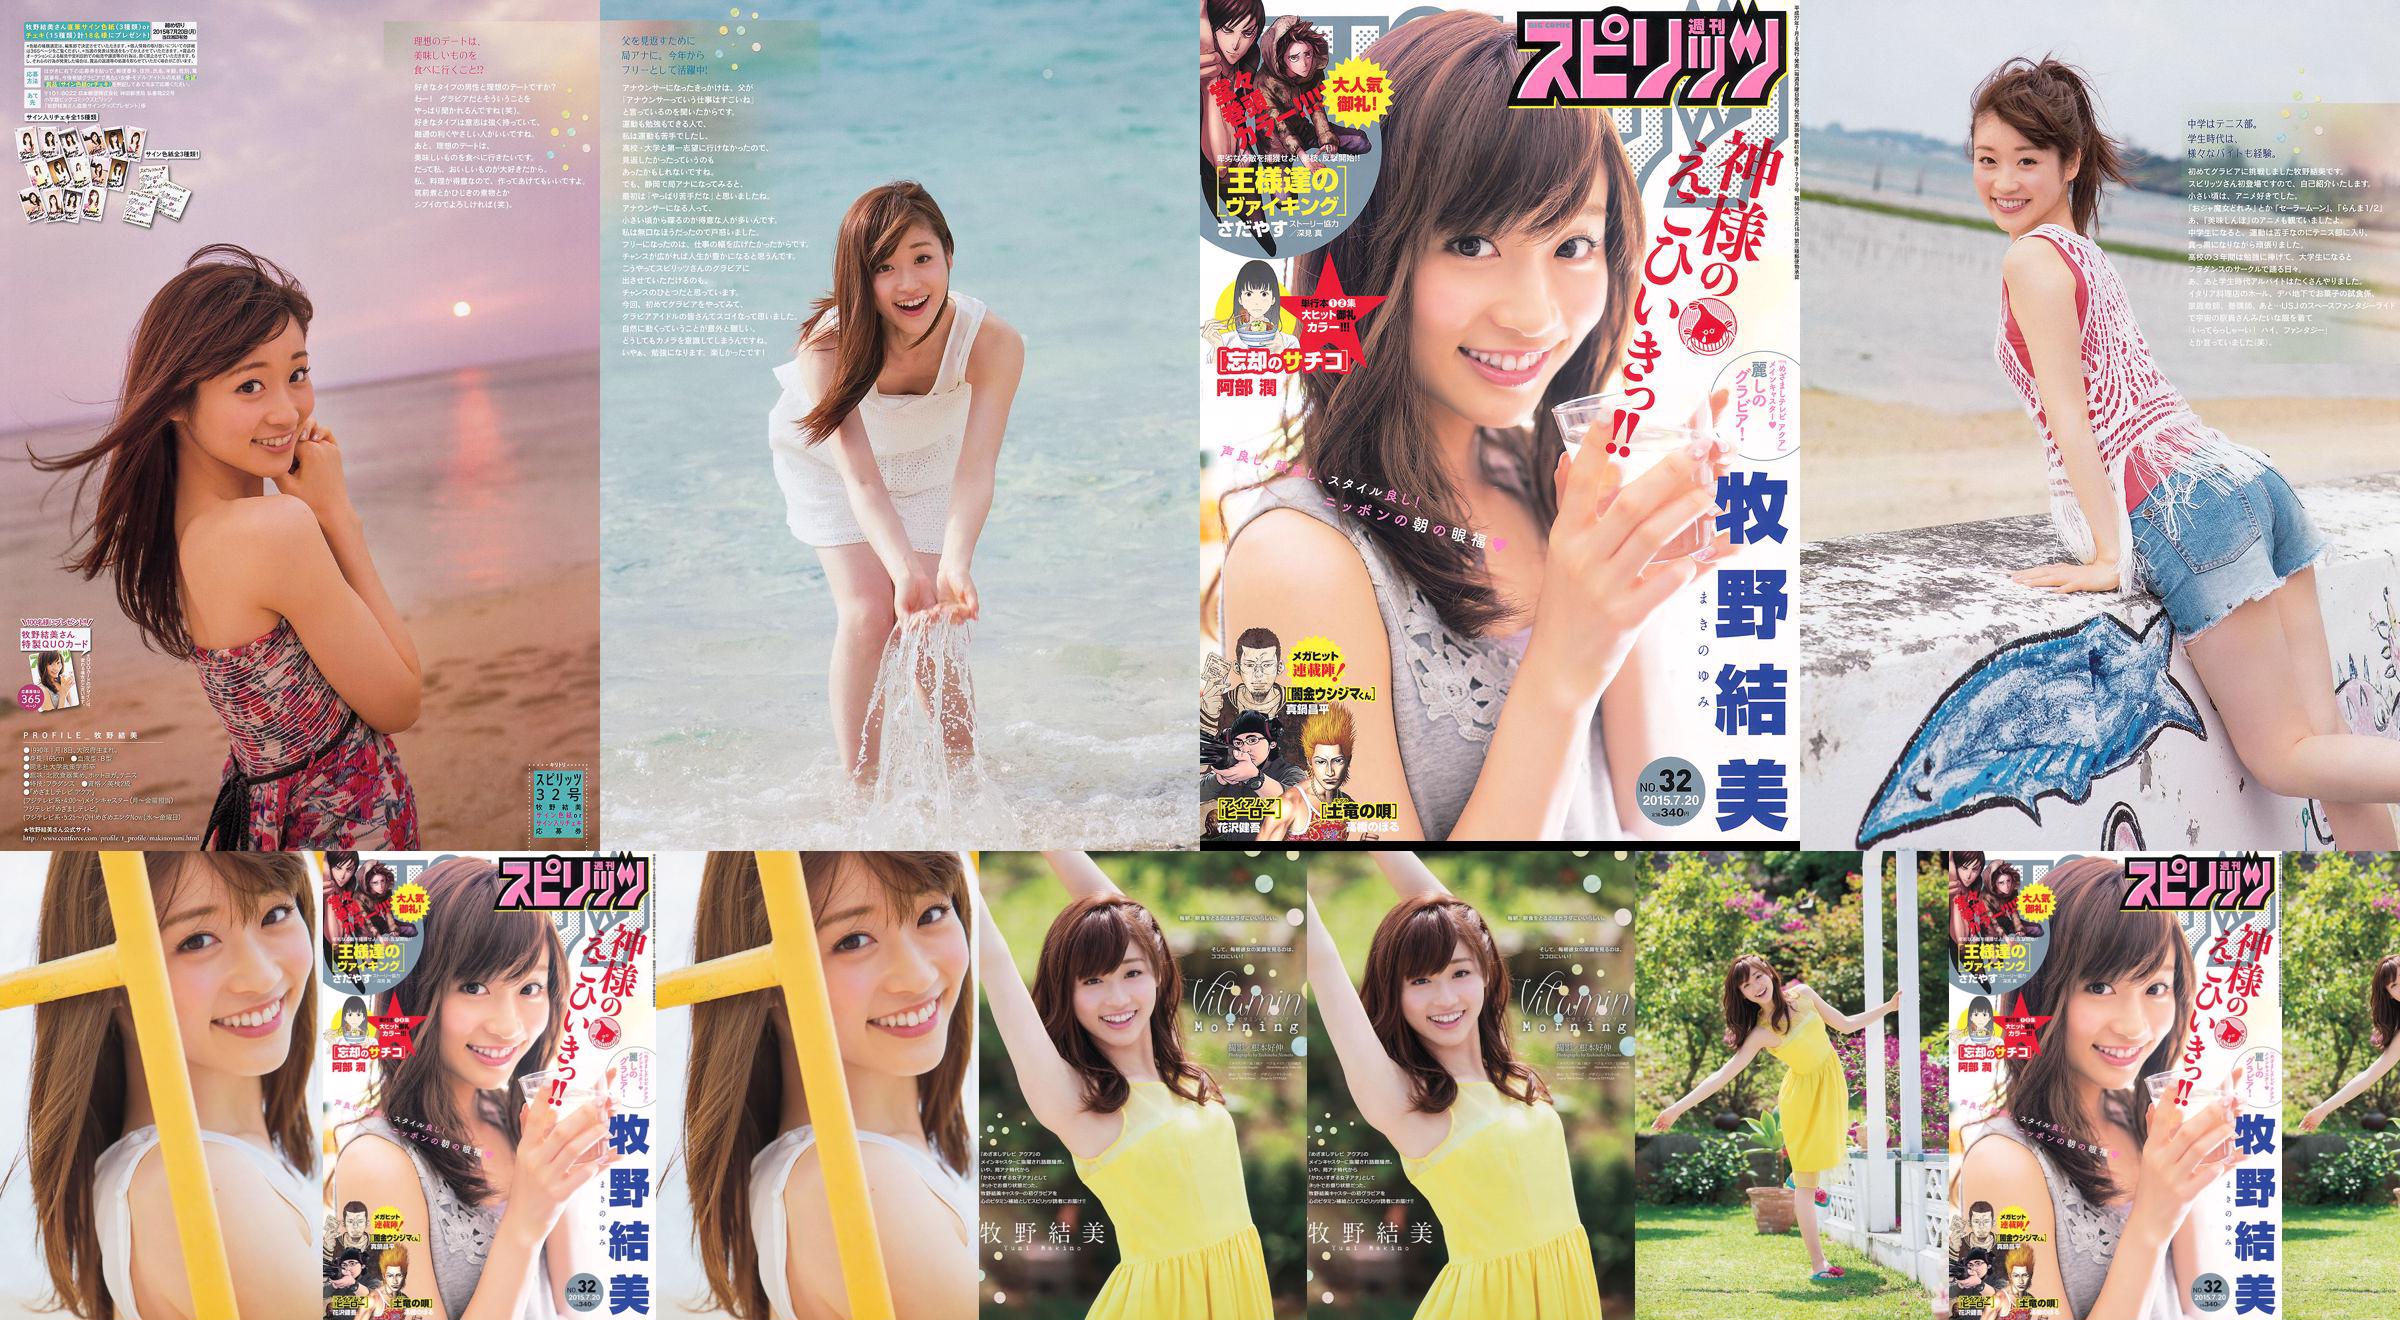 [Weekly Big Comic Spirits] Yumi Makino 2015 No.32 Photo Magazine No.ab8692 Pagina 1